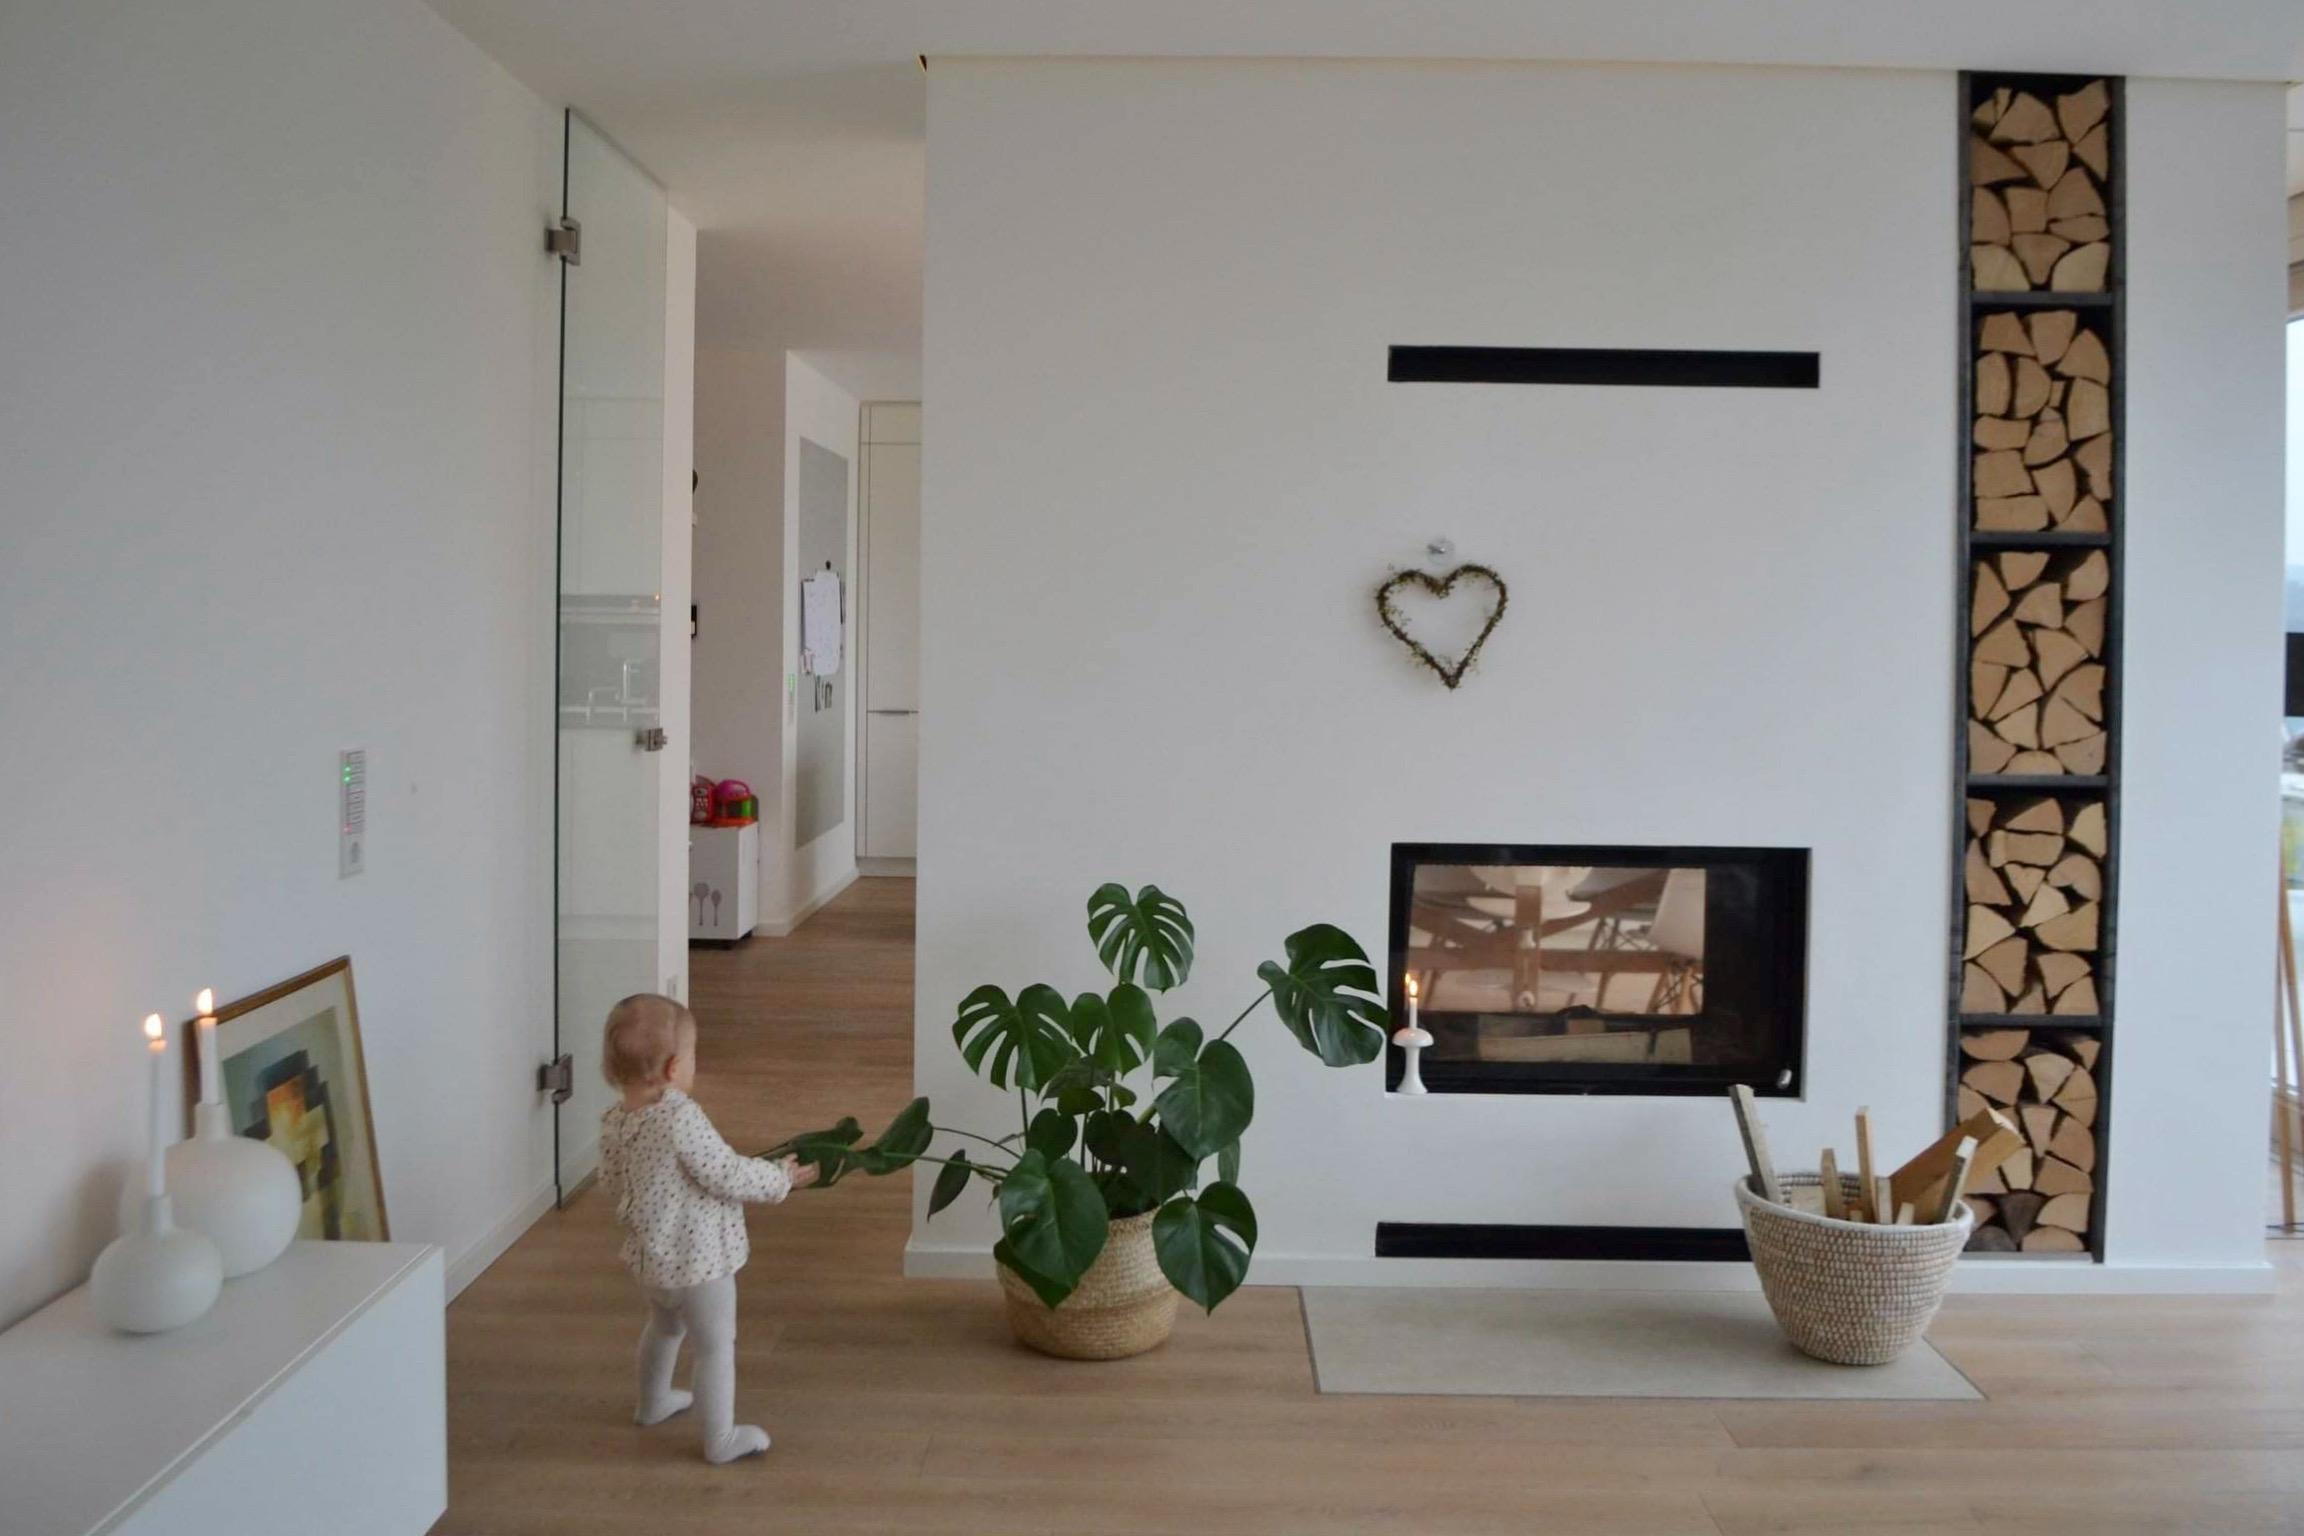 Die kleine Maus schleicht sich so gern auf meine Bilder...
#kamin #fireplace #livingroom #wohnzimmer #interior 